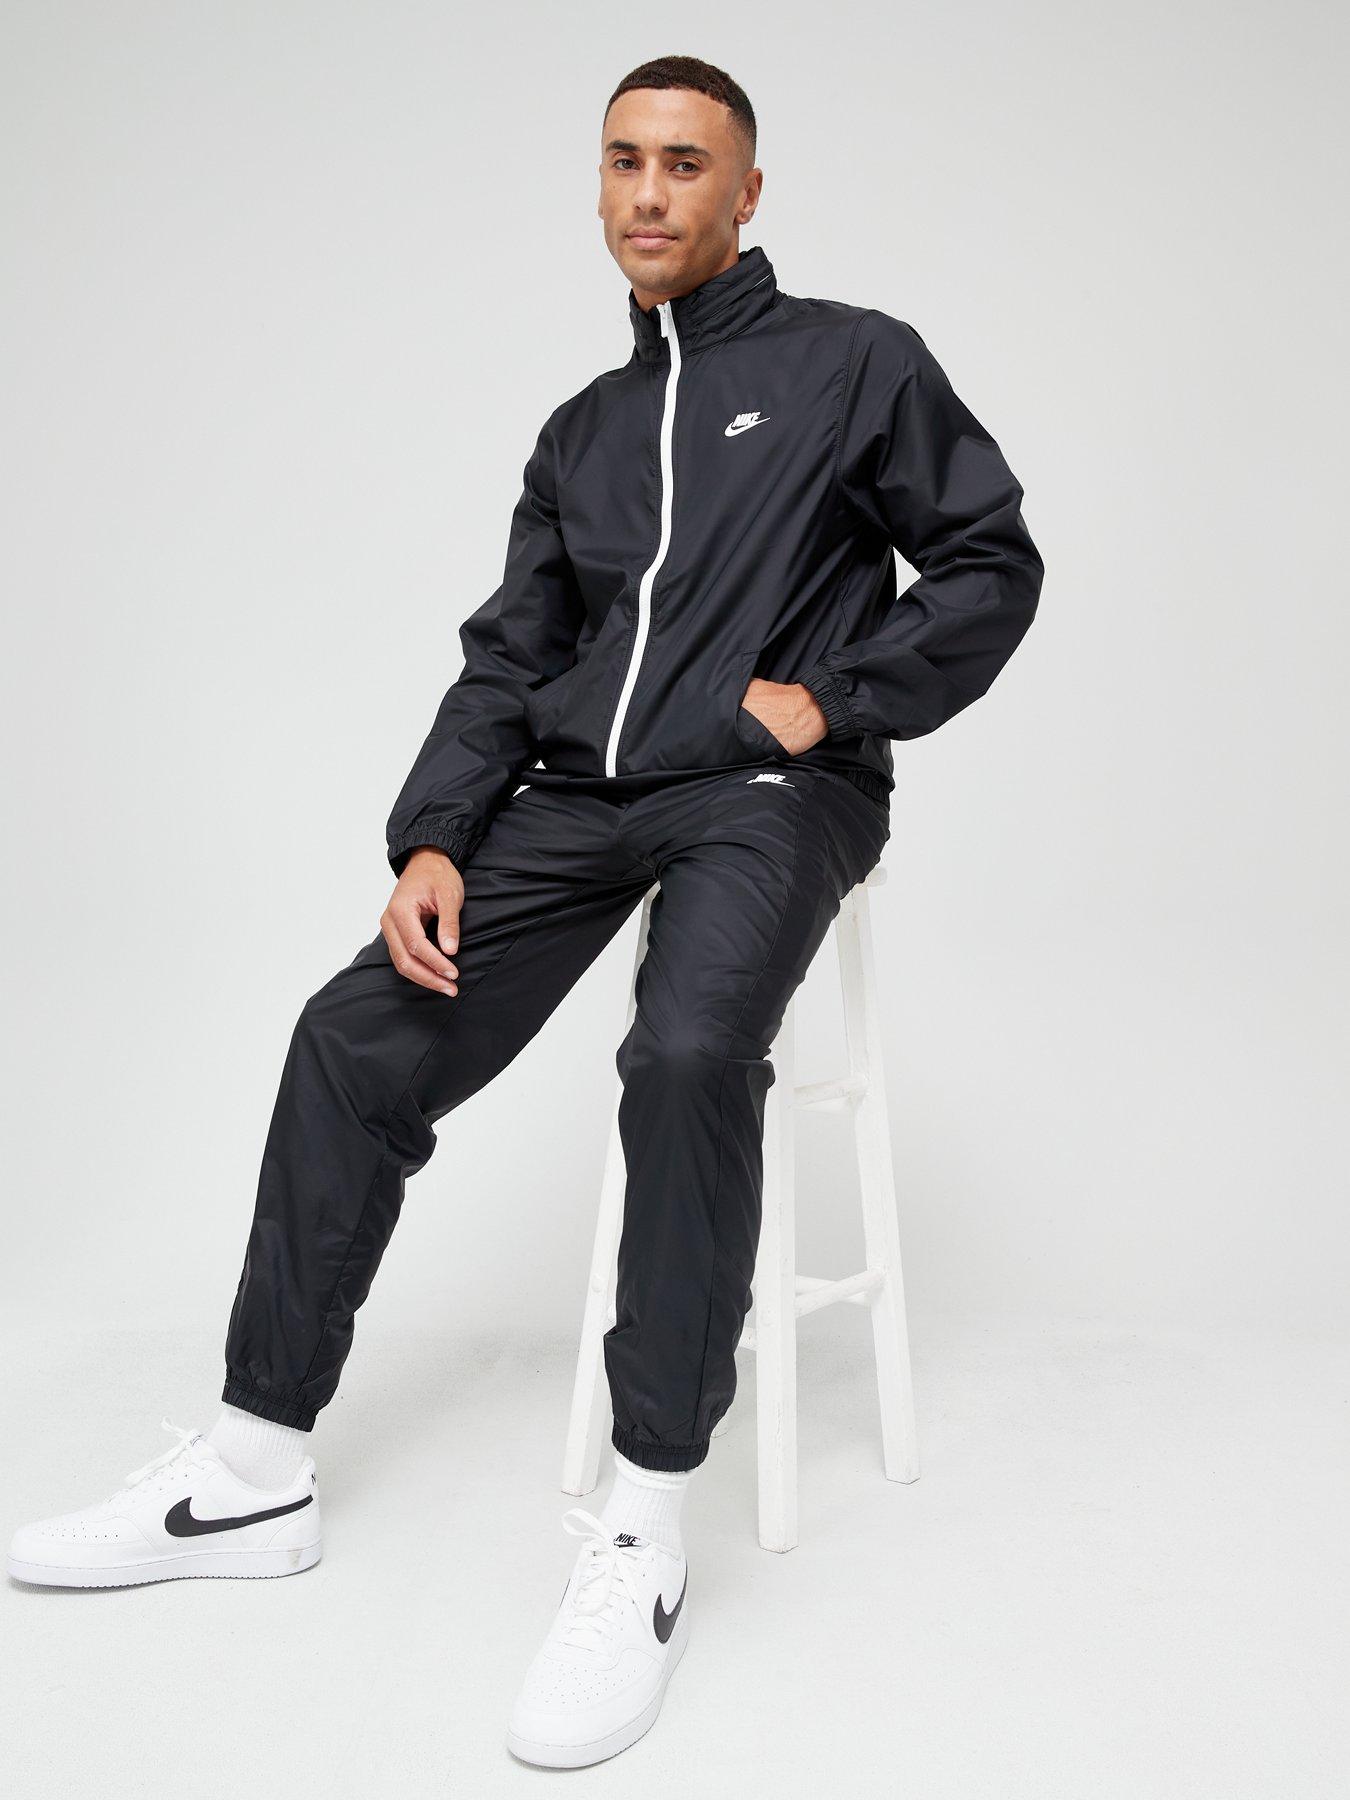 Bezit Kudde Mevrouw Nike NSW Lined Woven Tracksuit - Black/White | very.co.uk